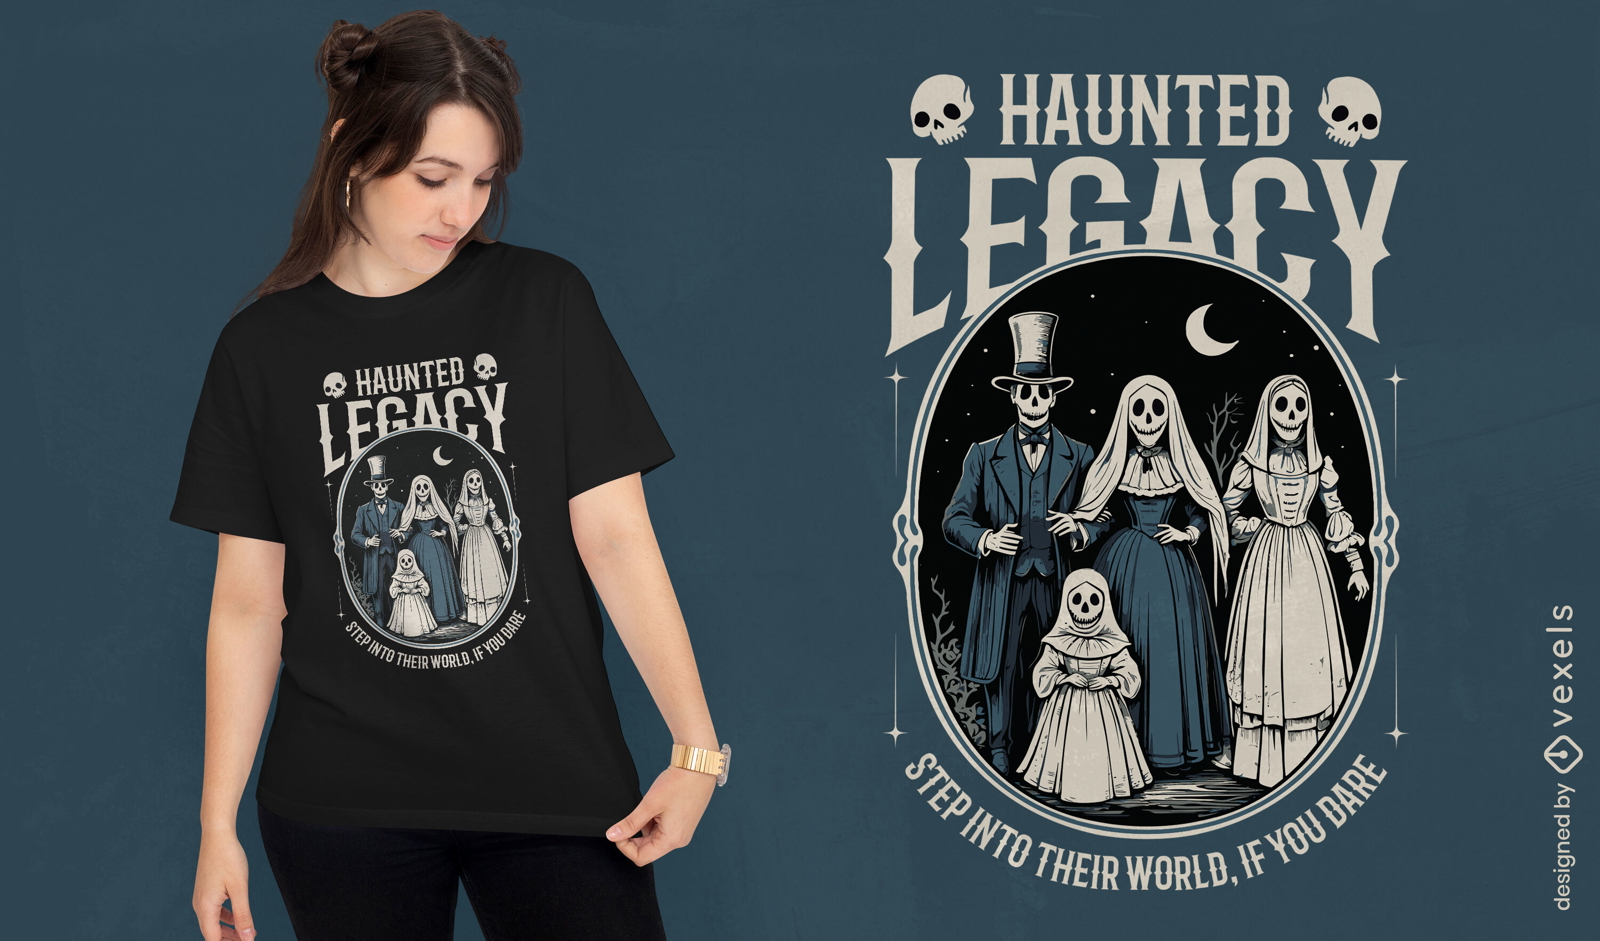 Diseño de camiseta del legado embrujado.